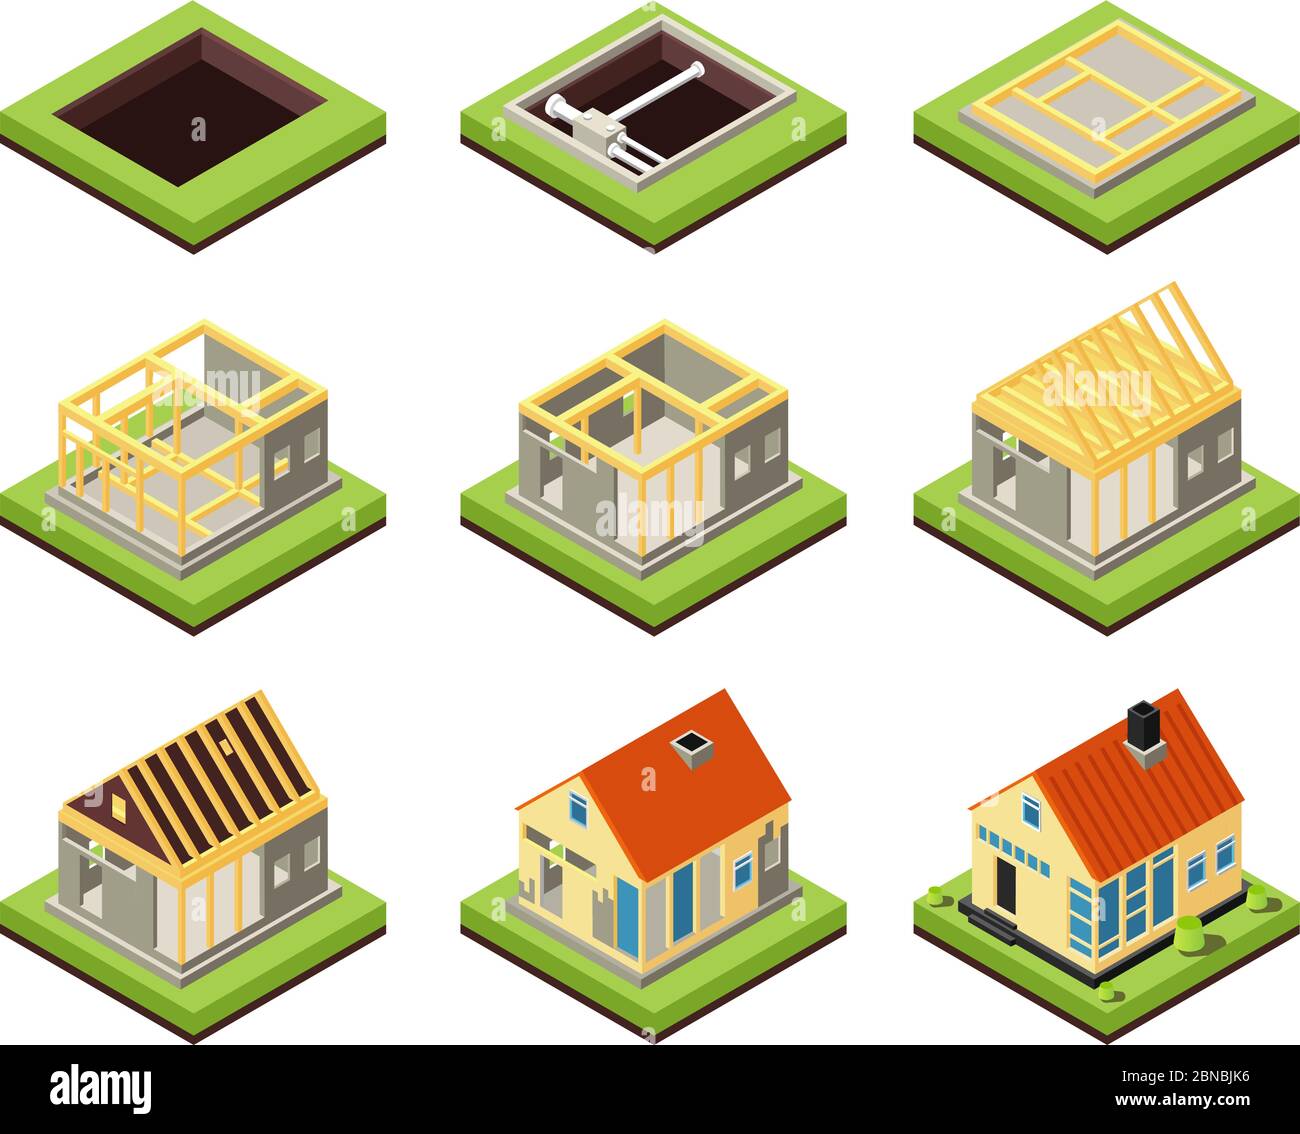 Hausbau. Bauphasen erstellen. Ländliche Wohnanlage. Isometrische Vektor-Icons Projekt Bau Haus, Wohnbau 3d-Illustration Stock Vektor